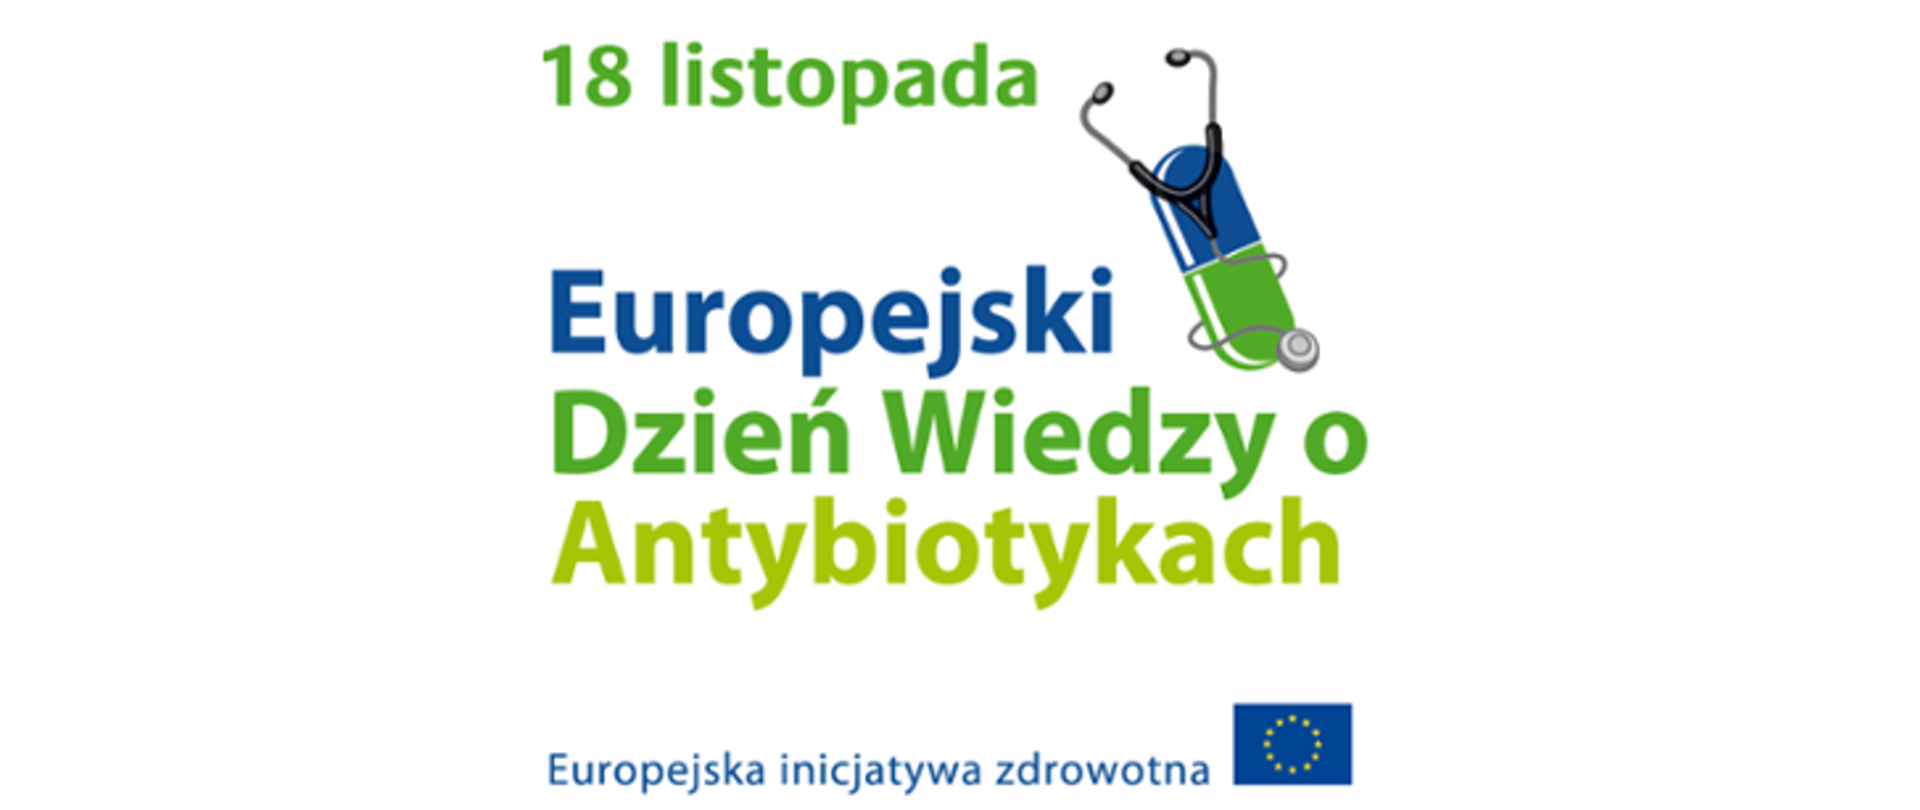 Europejski Dzień Wiedzy o Antybiotykach 18 listopada 2022